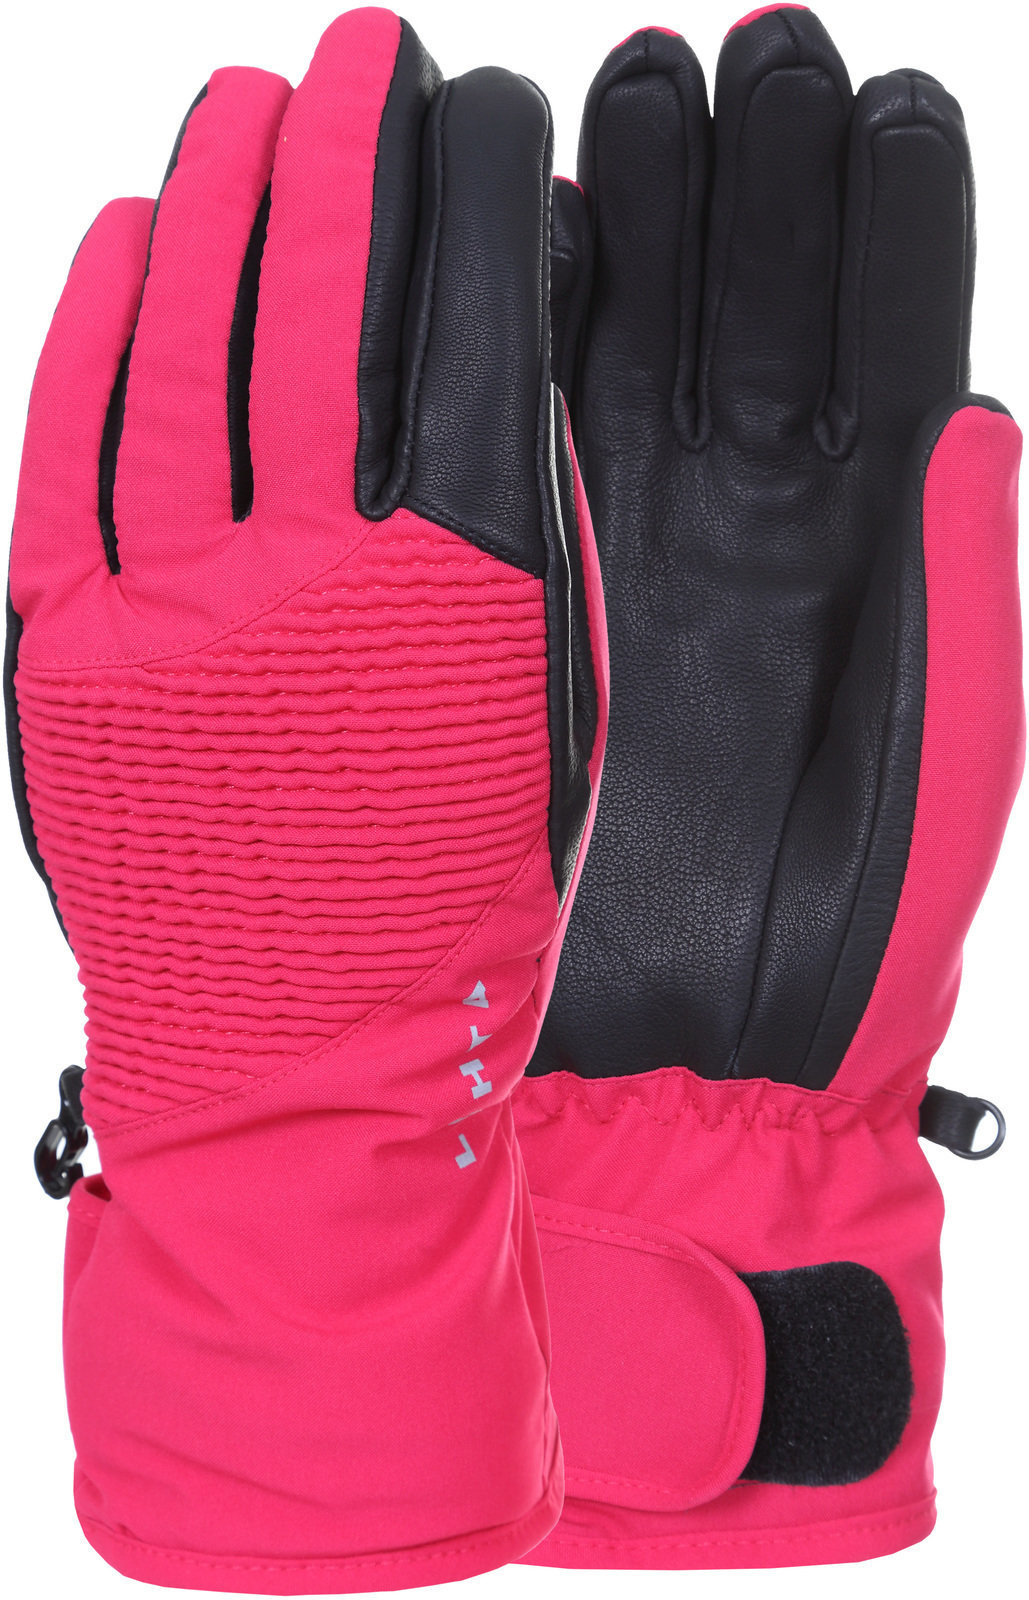 Ski Gloves Luhta Akasia L2 Cranberry S Ski Gloves